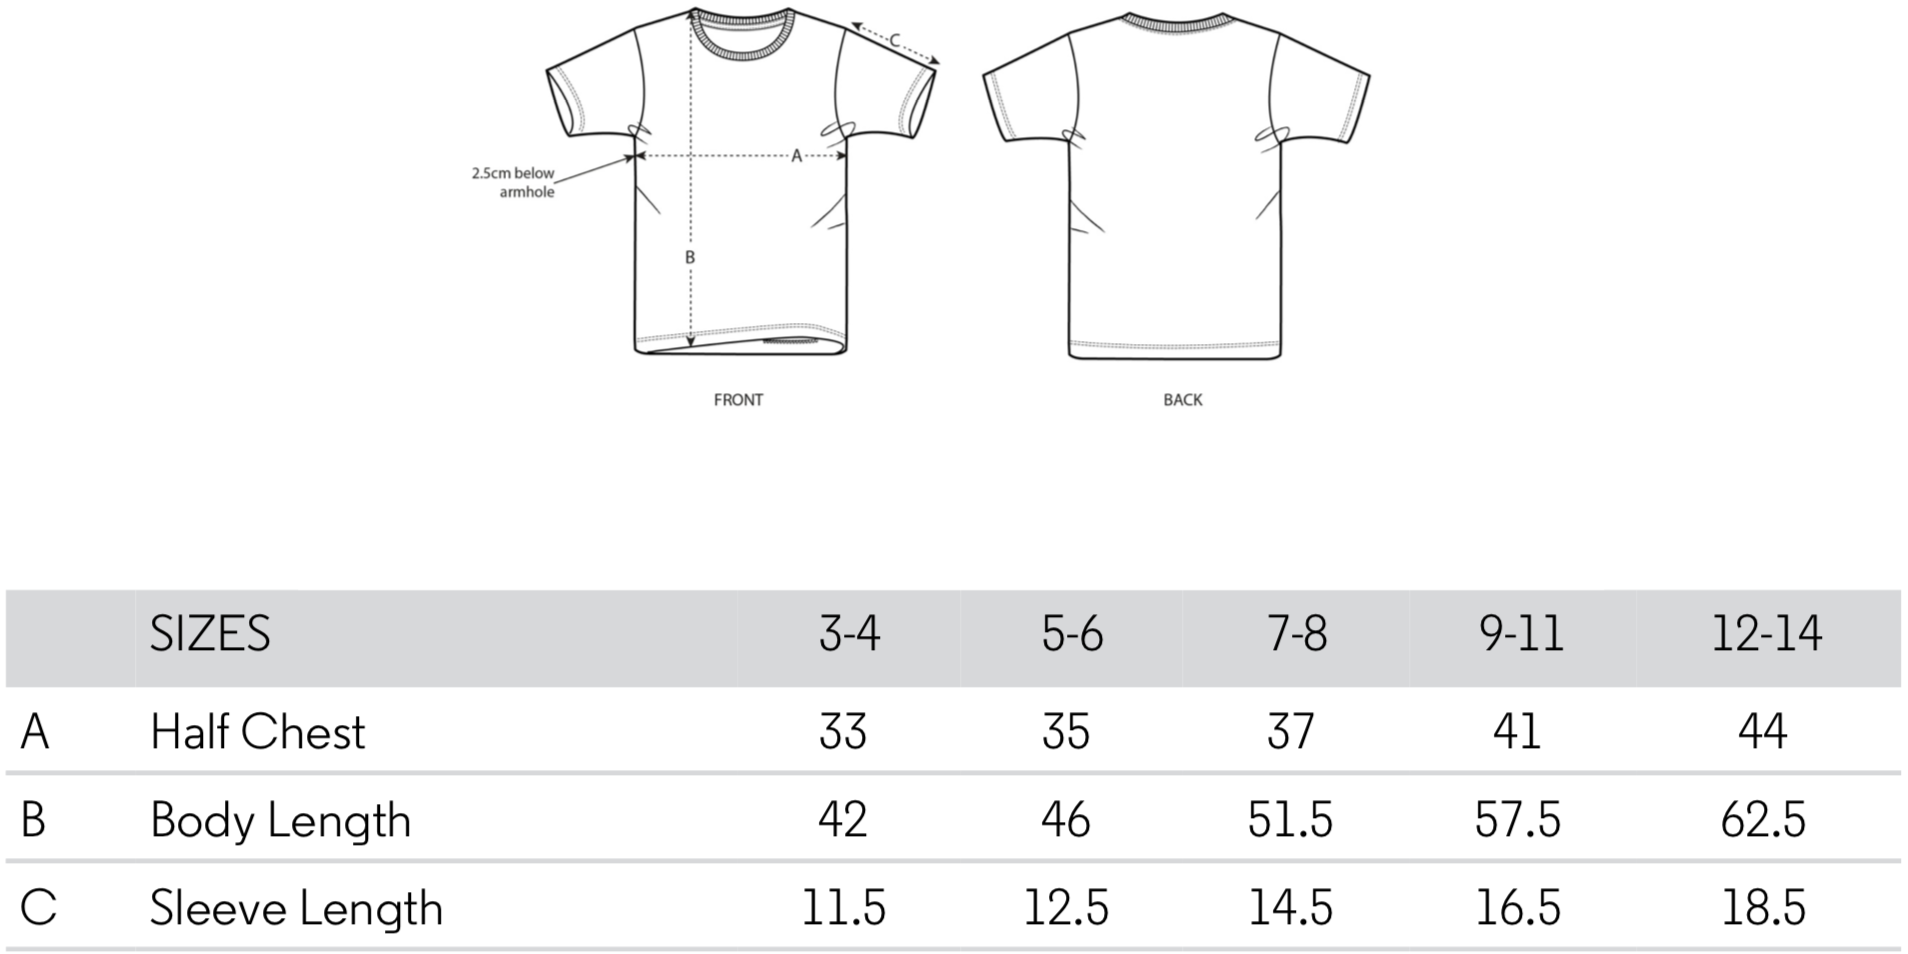 malanmelon - Kids T-Shirt – Organic Cotton – GOAT Slogan – Cerise on Multi-Colours